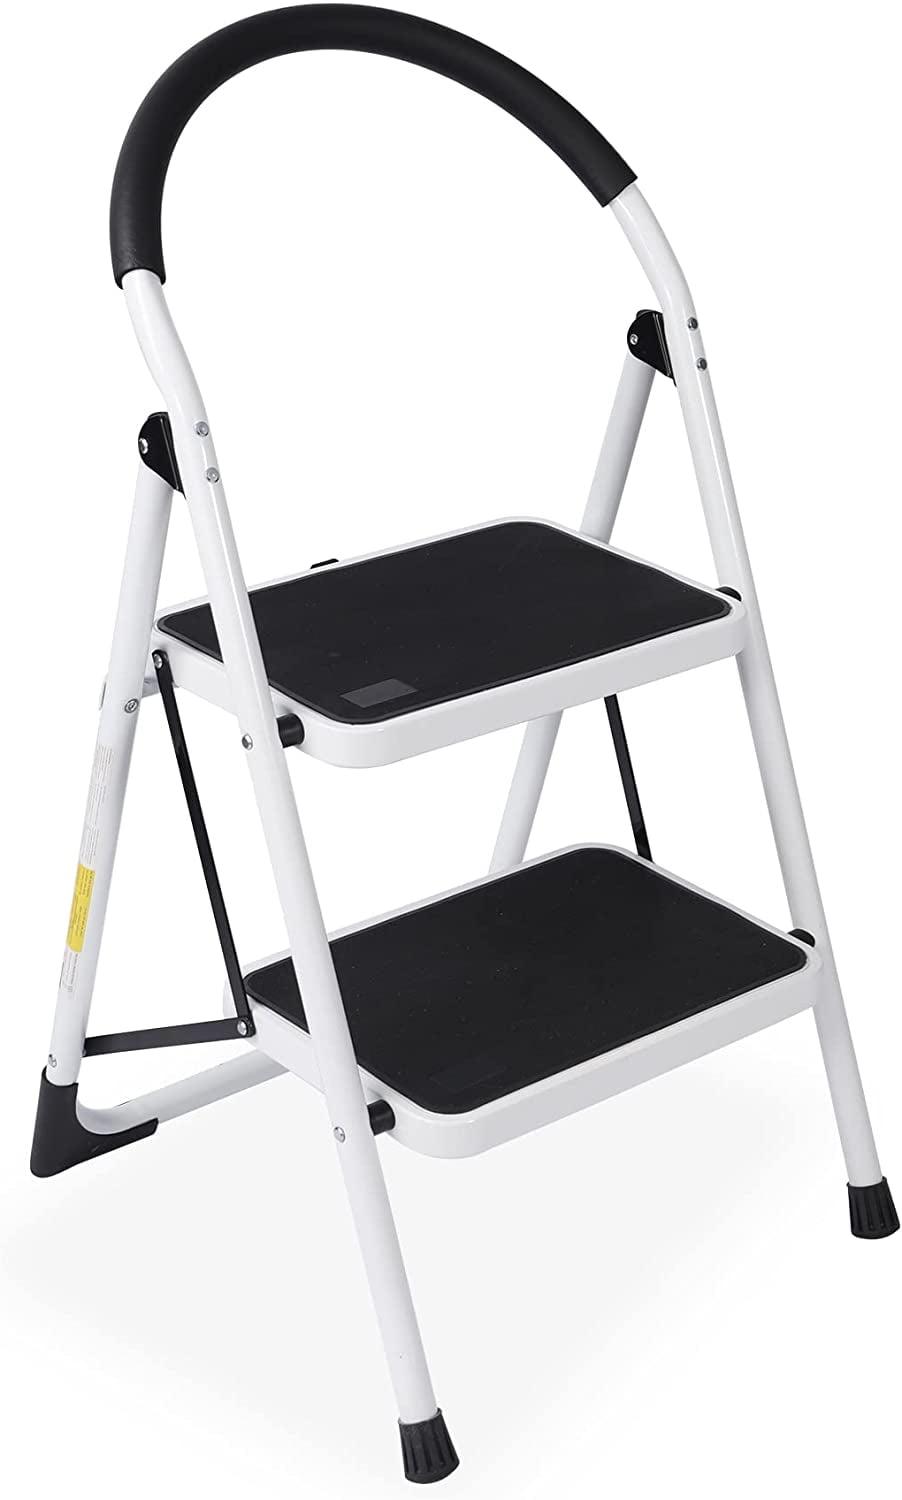 New Aluminum Ladder 2 Step Folding Platform Work Stool Lightweight Home Kitchen 